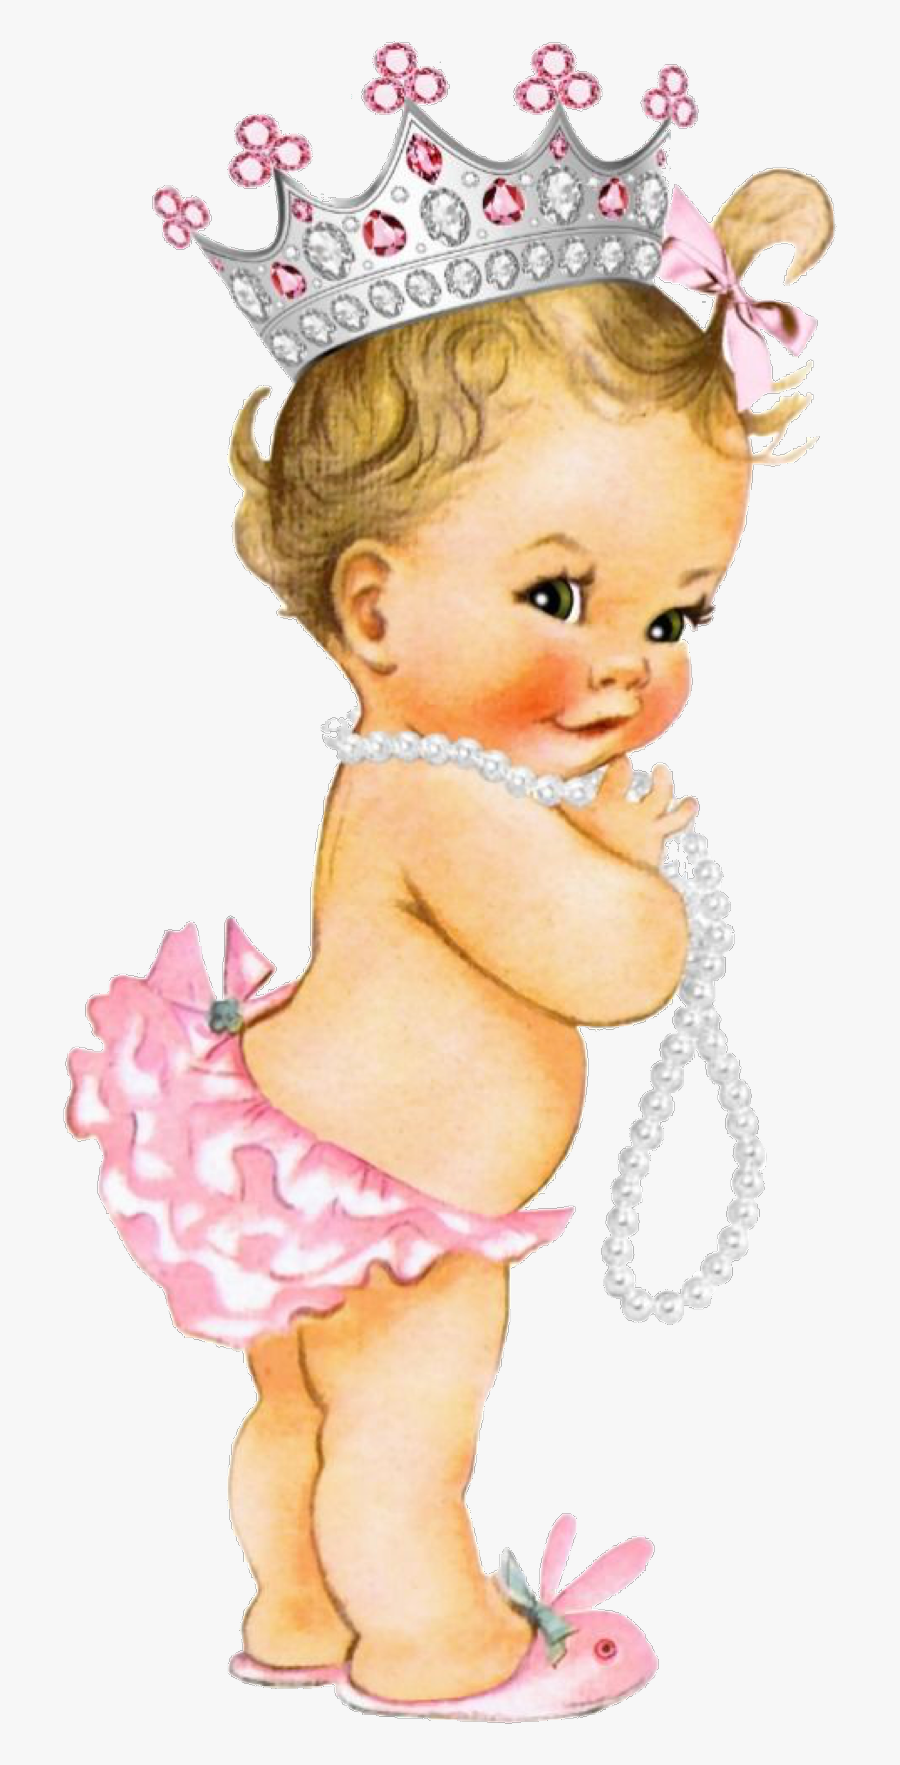 baby-babygirl-vintagebaby-freetoedit-vintage-princess-baby-png